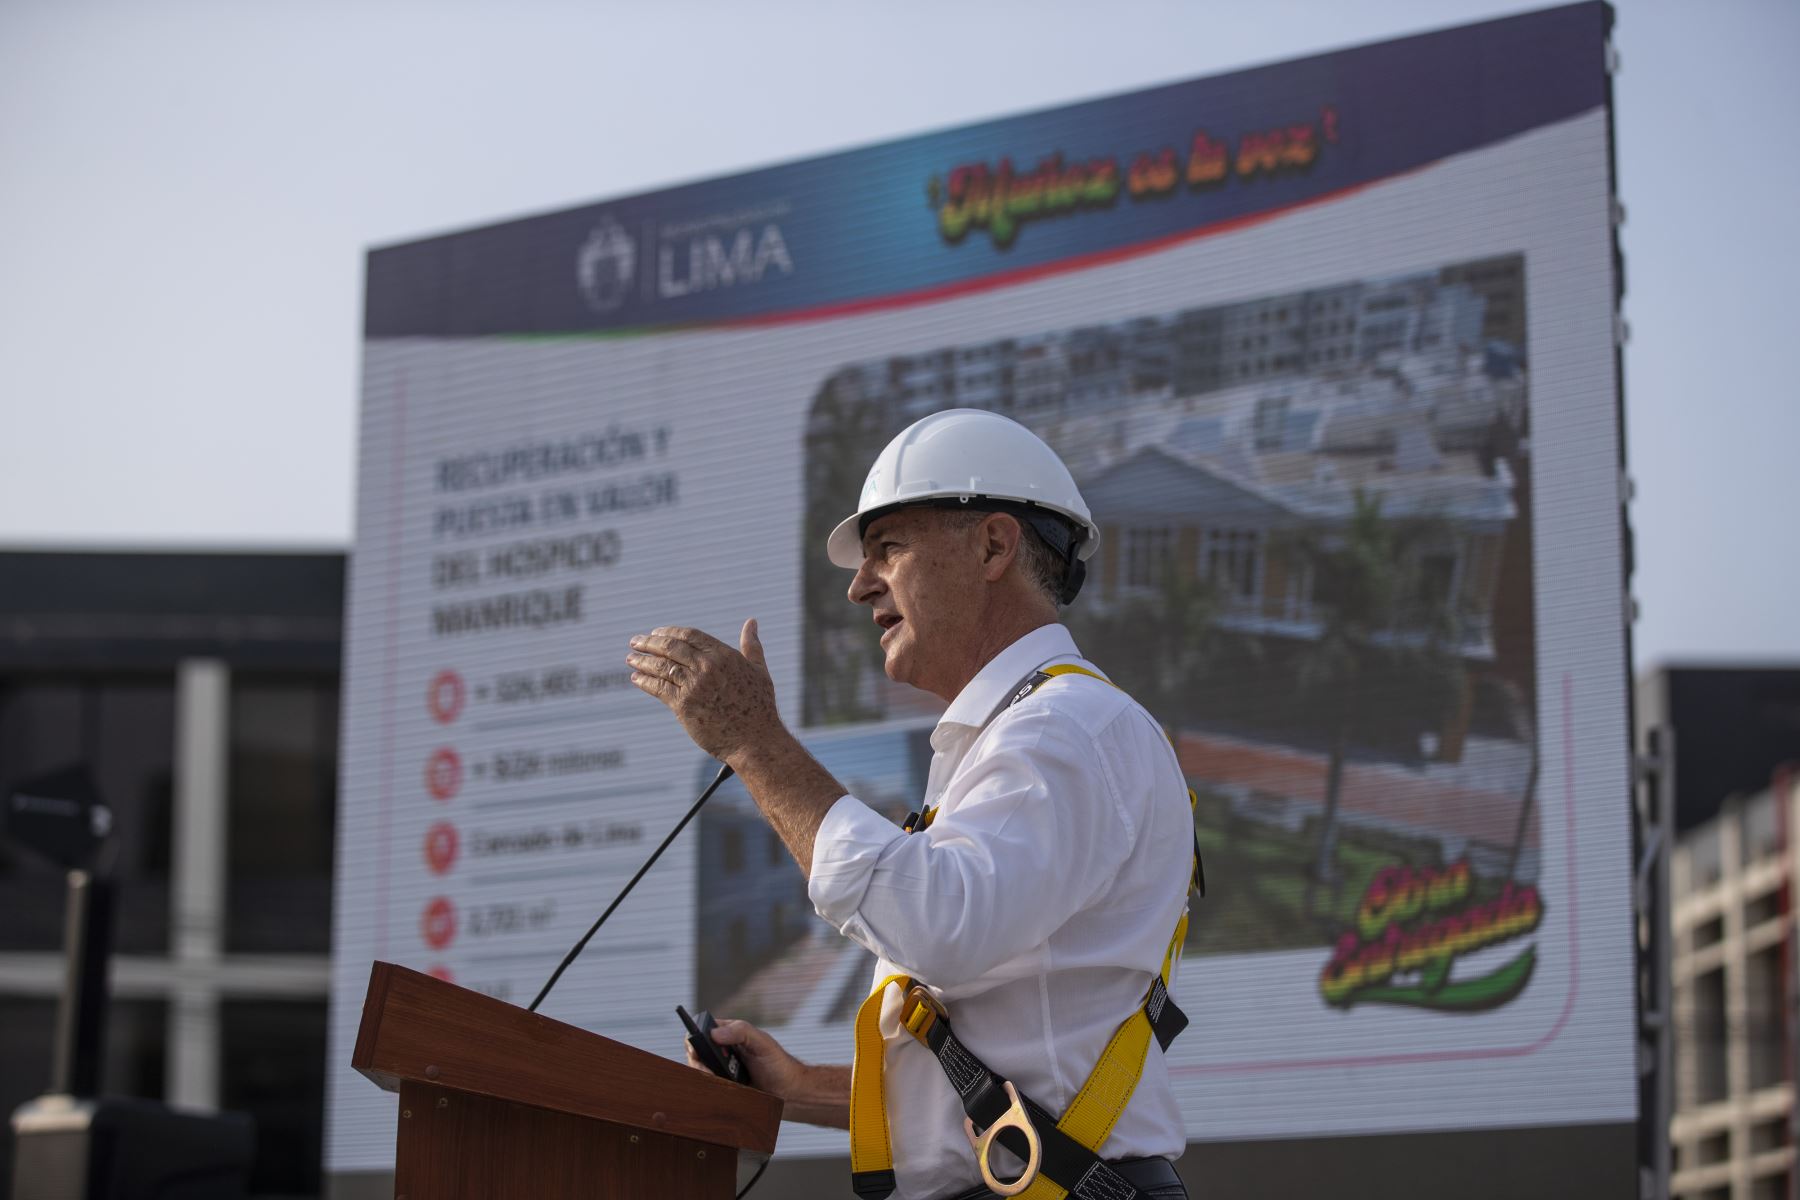 Como parte de su política de transparencia, el alcalde de Lima Jorge Muñoz, presenta el balance de su gestión durante los tres años que lleva al frente de la Municipalidad de Lima. Foto: MML